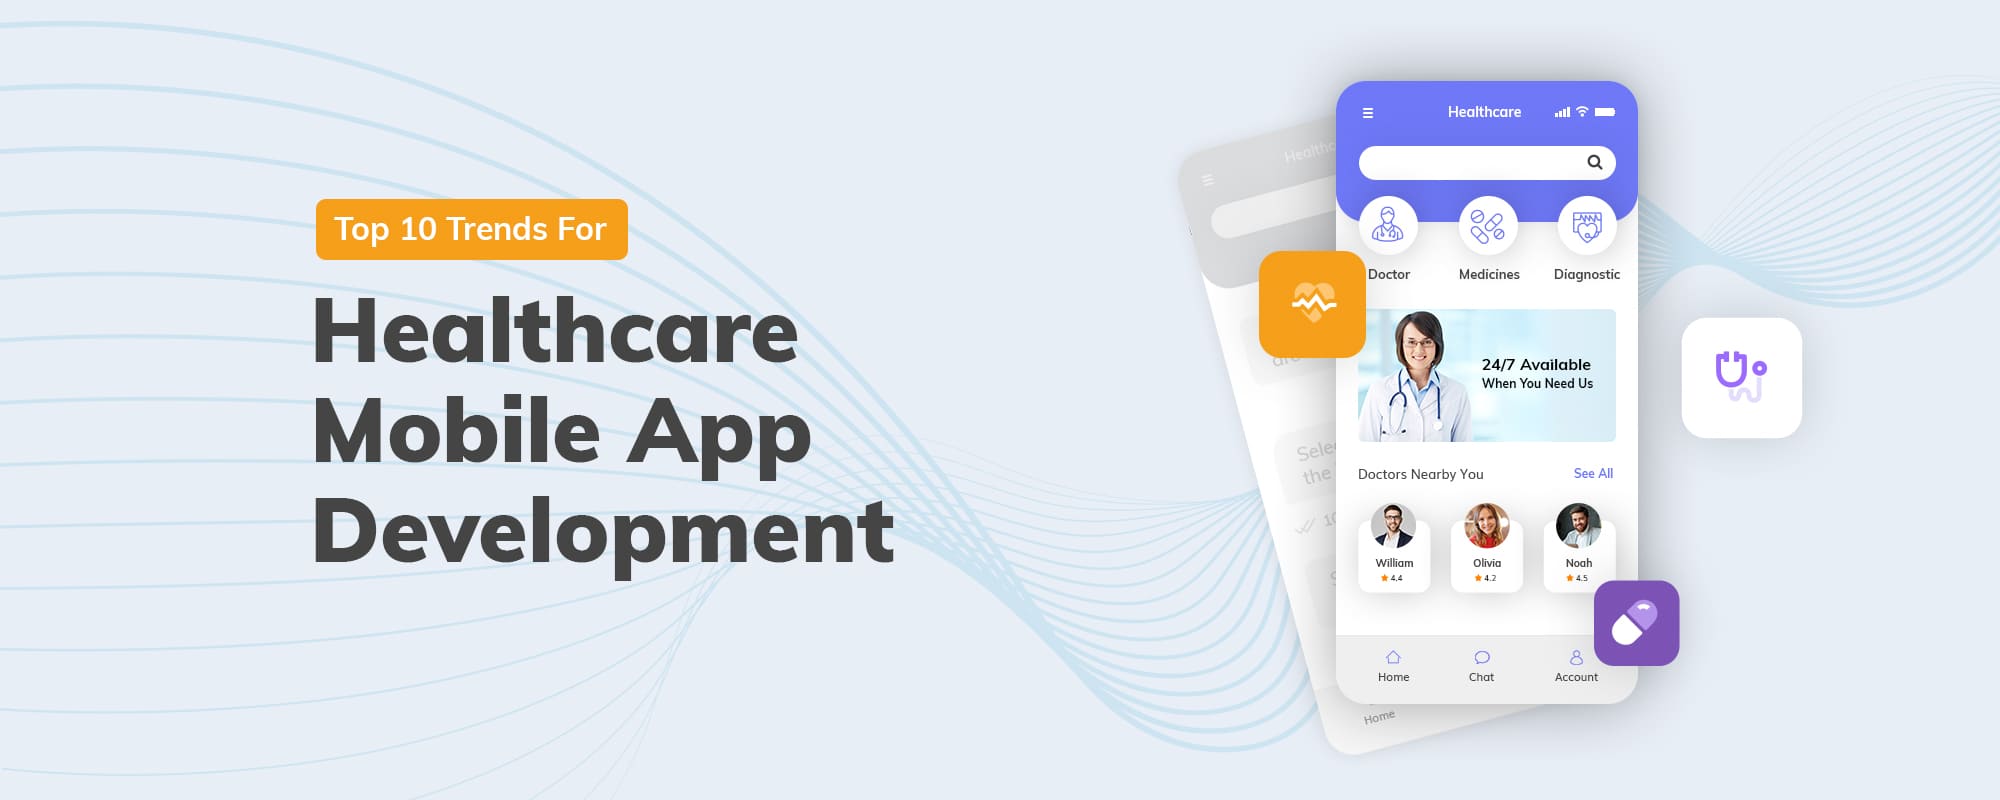 Top 10 Healthcare Mobile App Development Trends in 2020